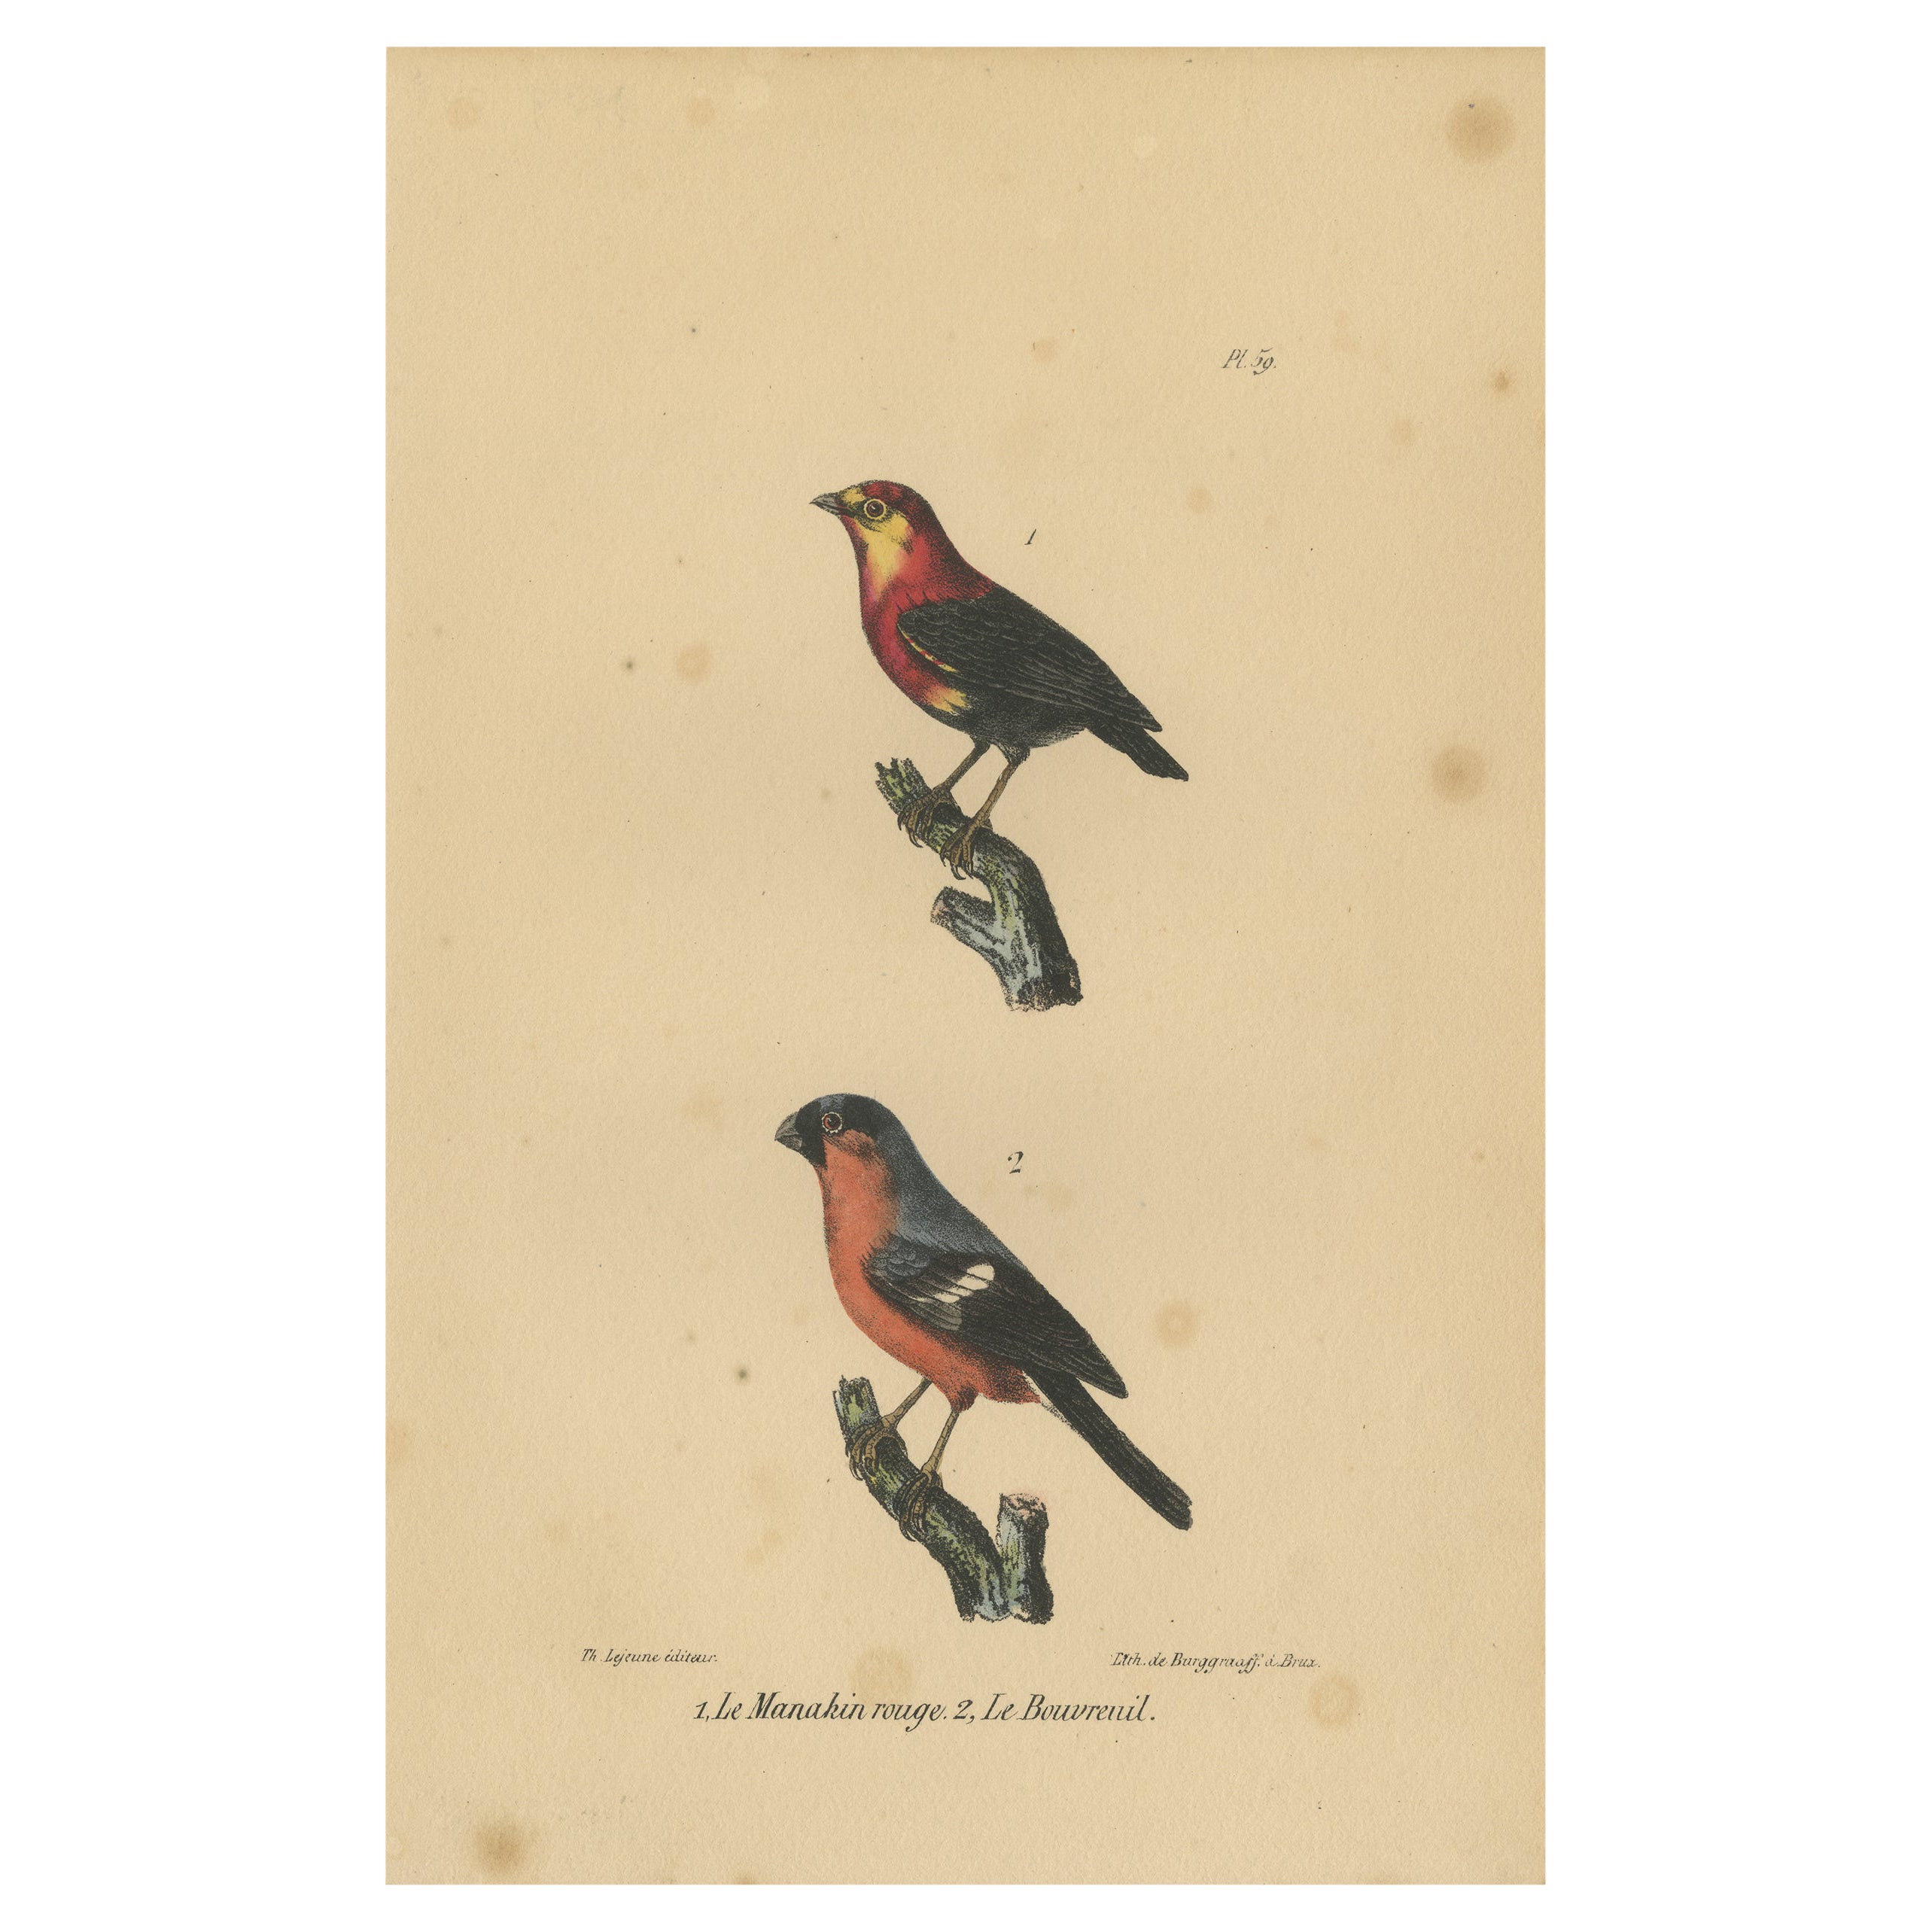 Impression oiseau ancienne Pl. 59 d'un Manakin et d'un taureau par Lejeune, vers 1830